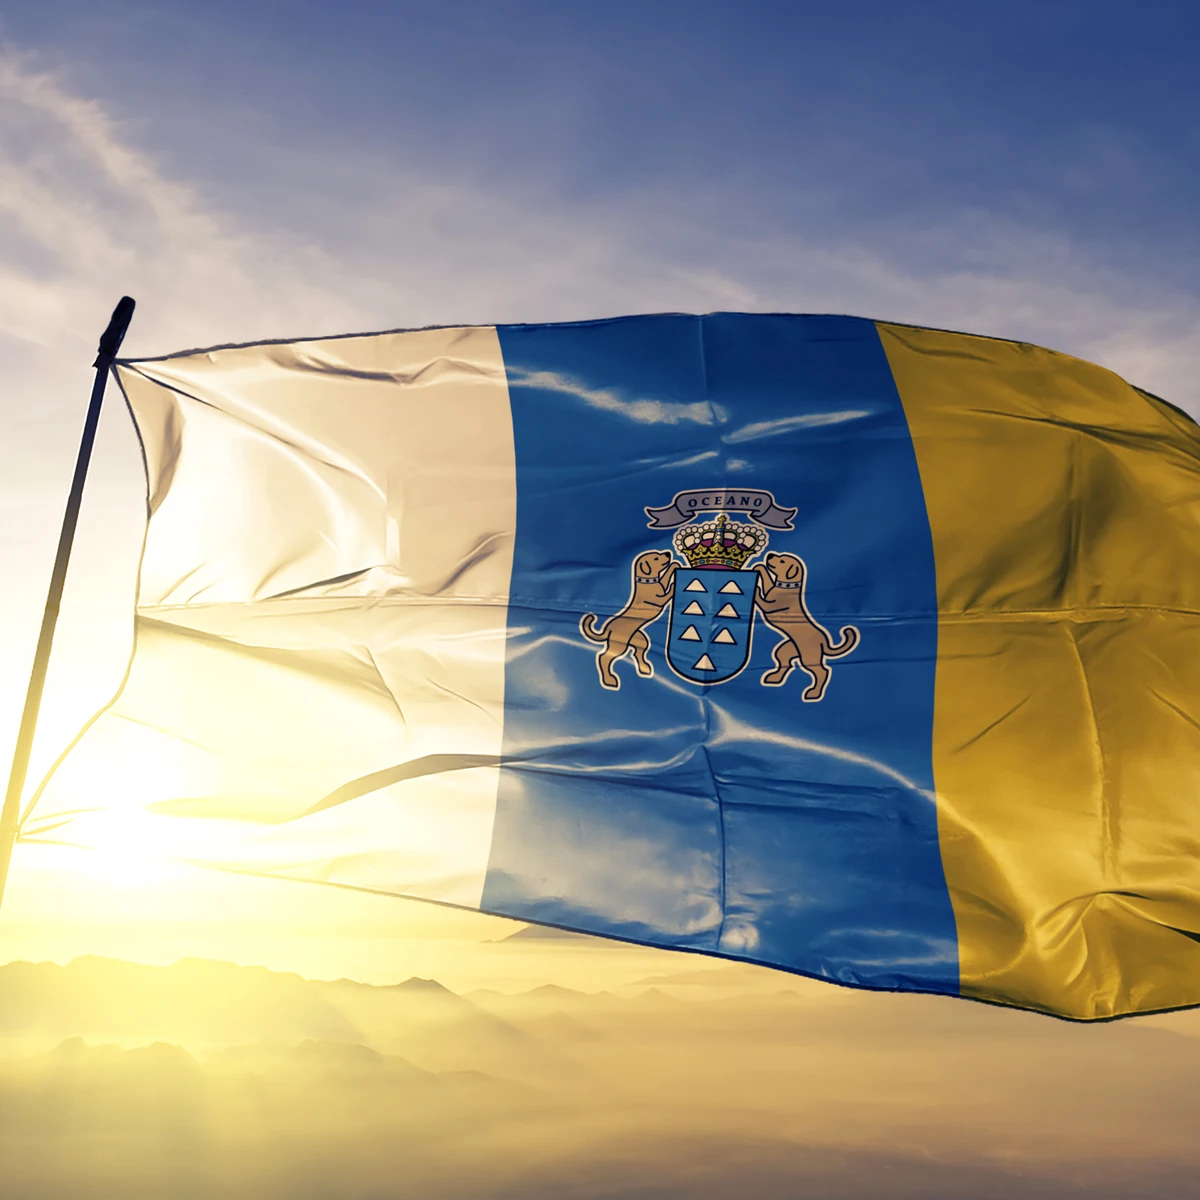 Primitivo Empotrar Cumplir Blanca, azul y amarilla: El origen de la bandera de Canarias